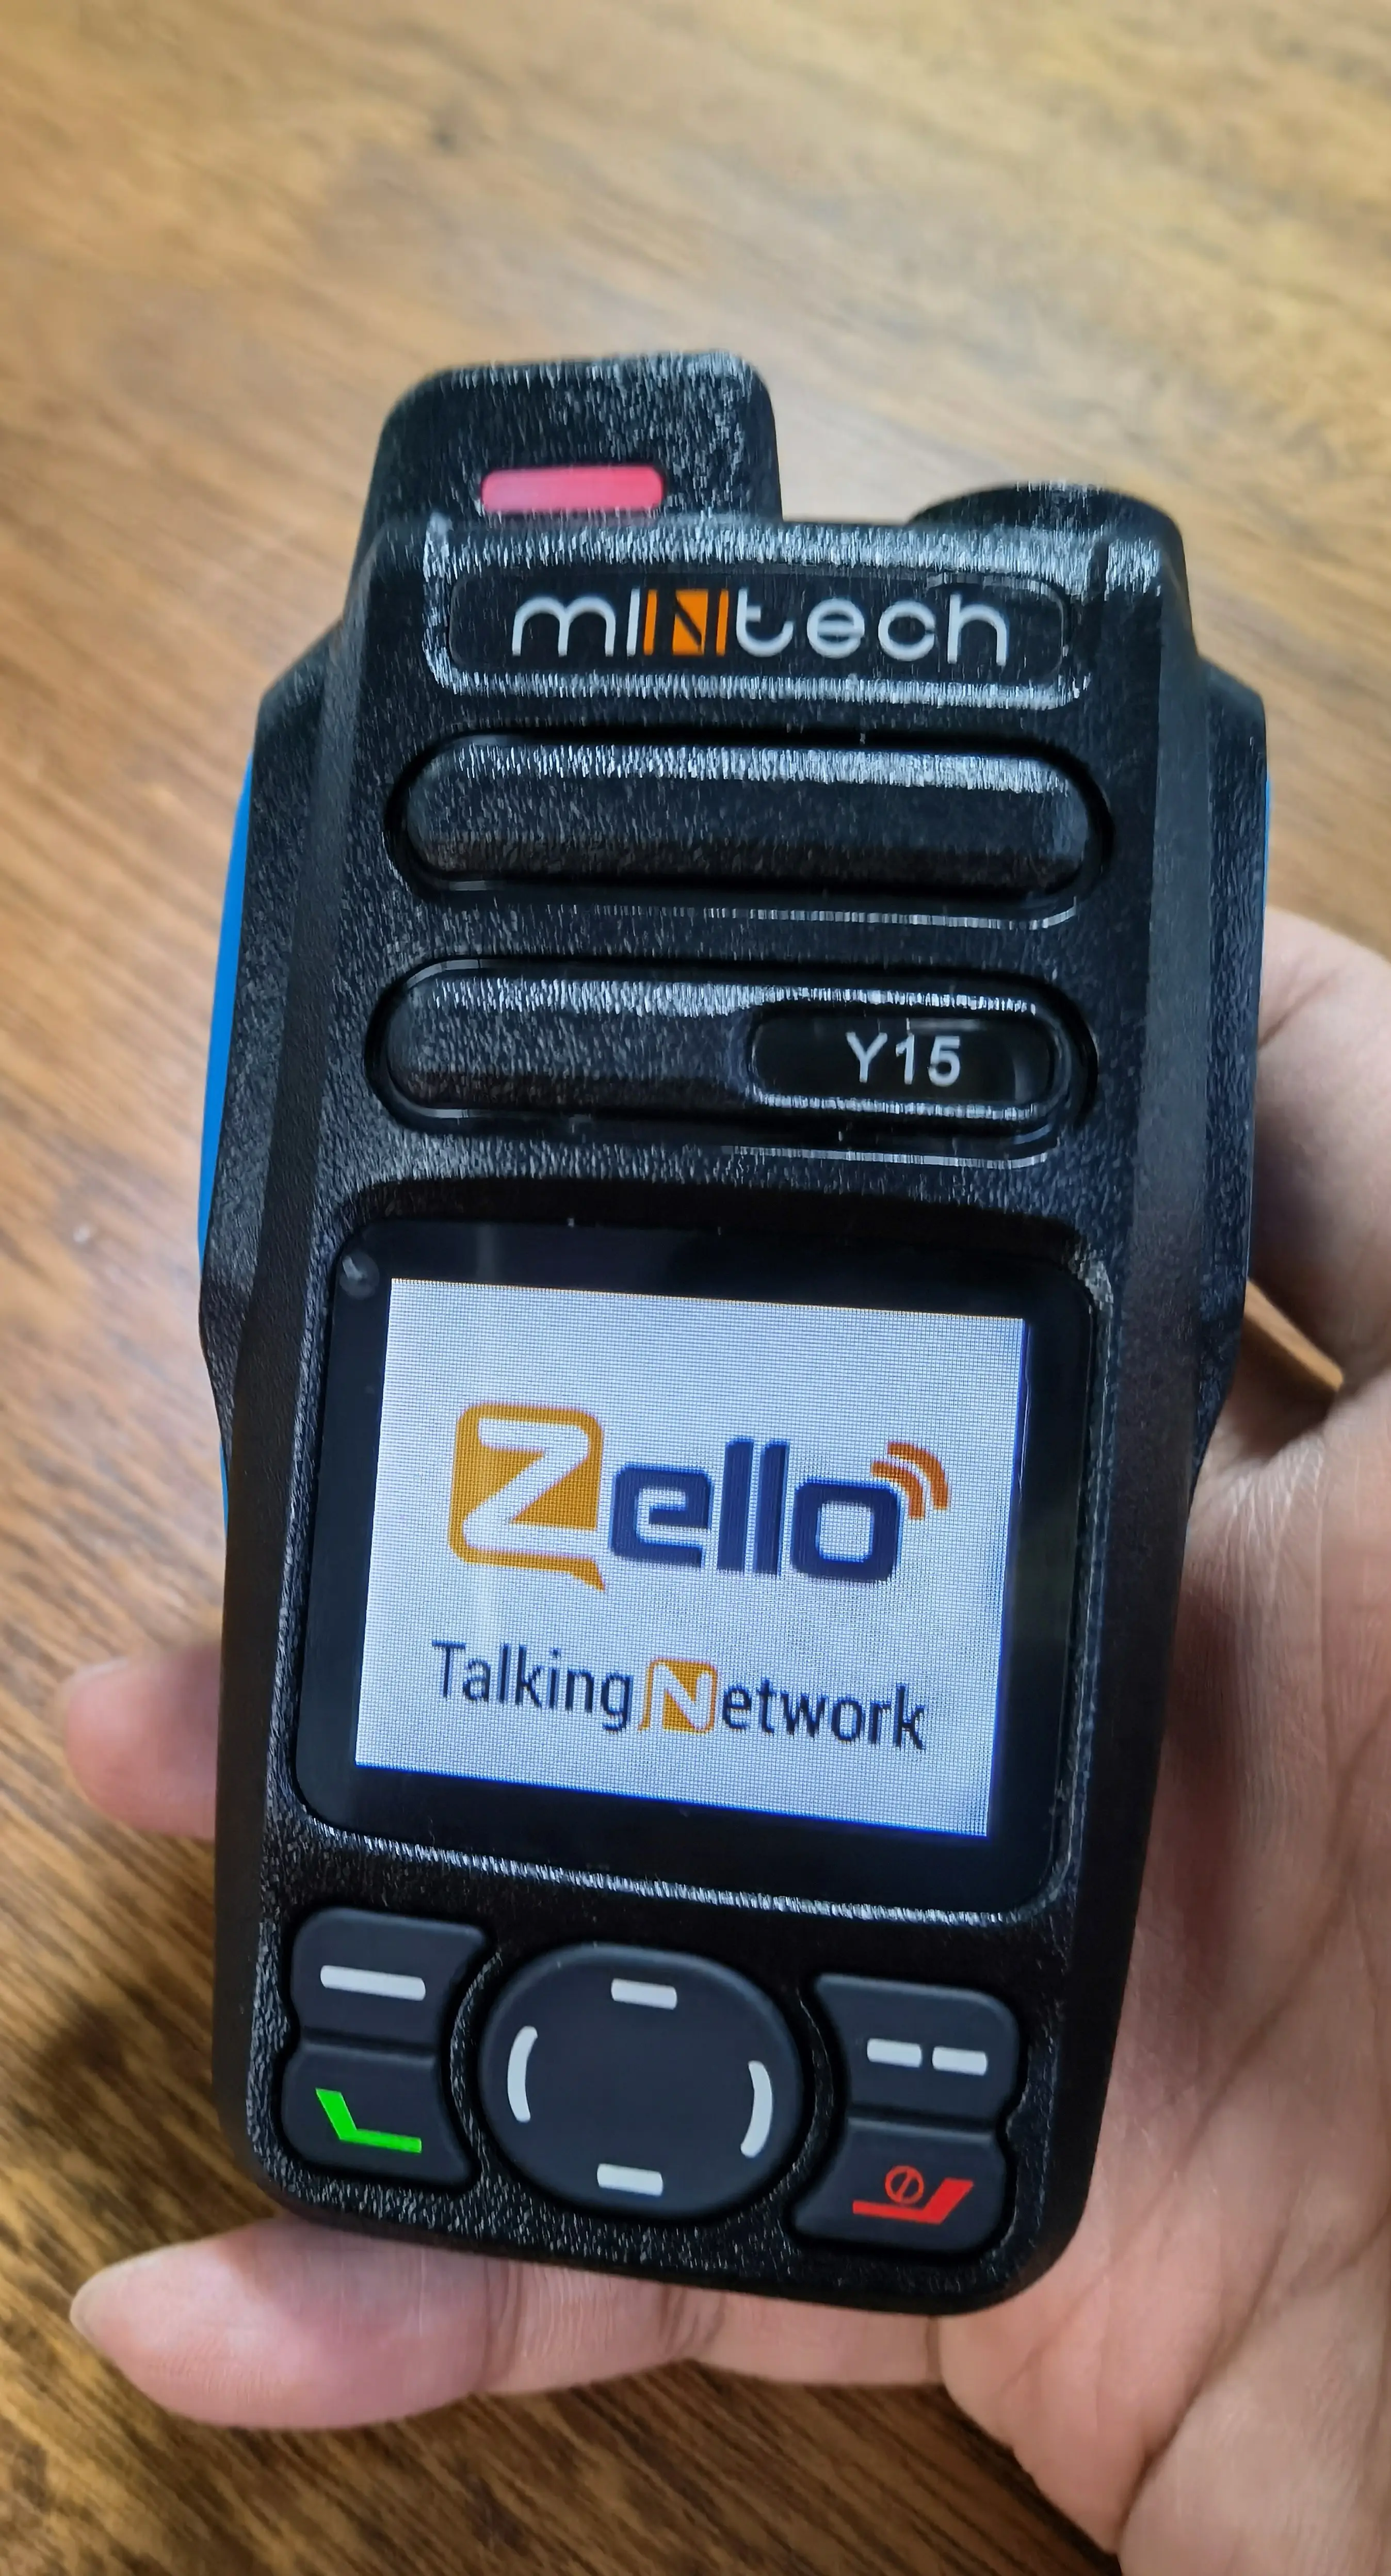 ज़ेलो वाईफ़ाई एंड्रॉइड वॉकी टॉकी सिम कार्ड 4जी एलटीई पीओसी टू वे रेडियो एमसी-525 के साथ